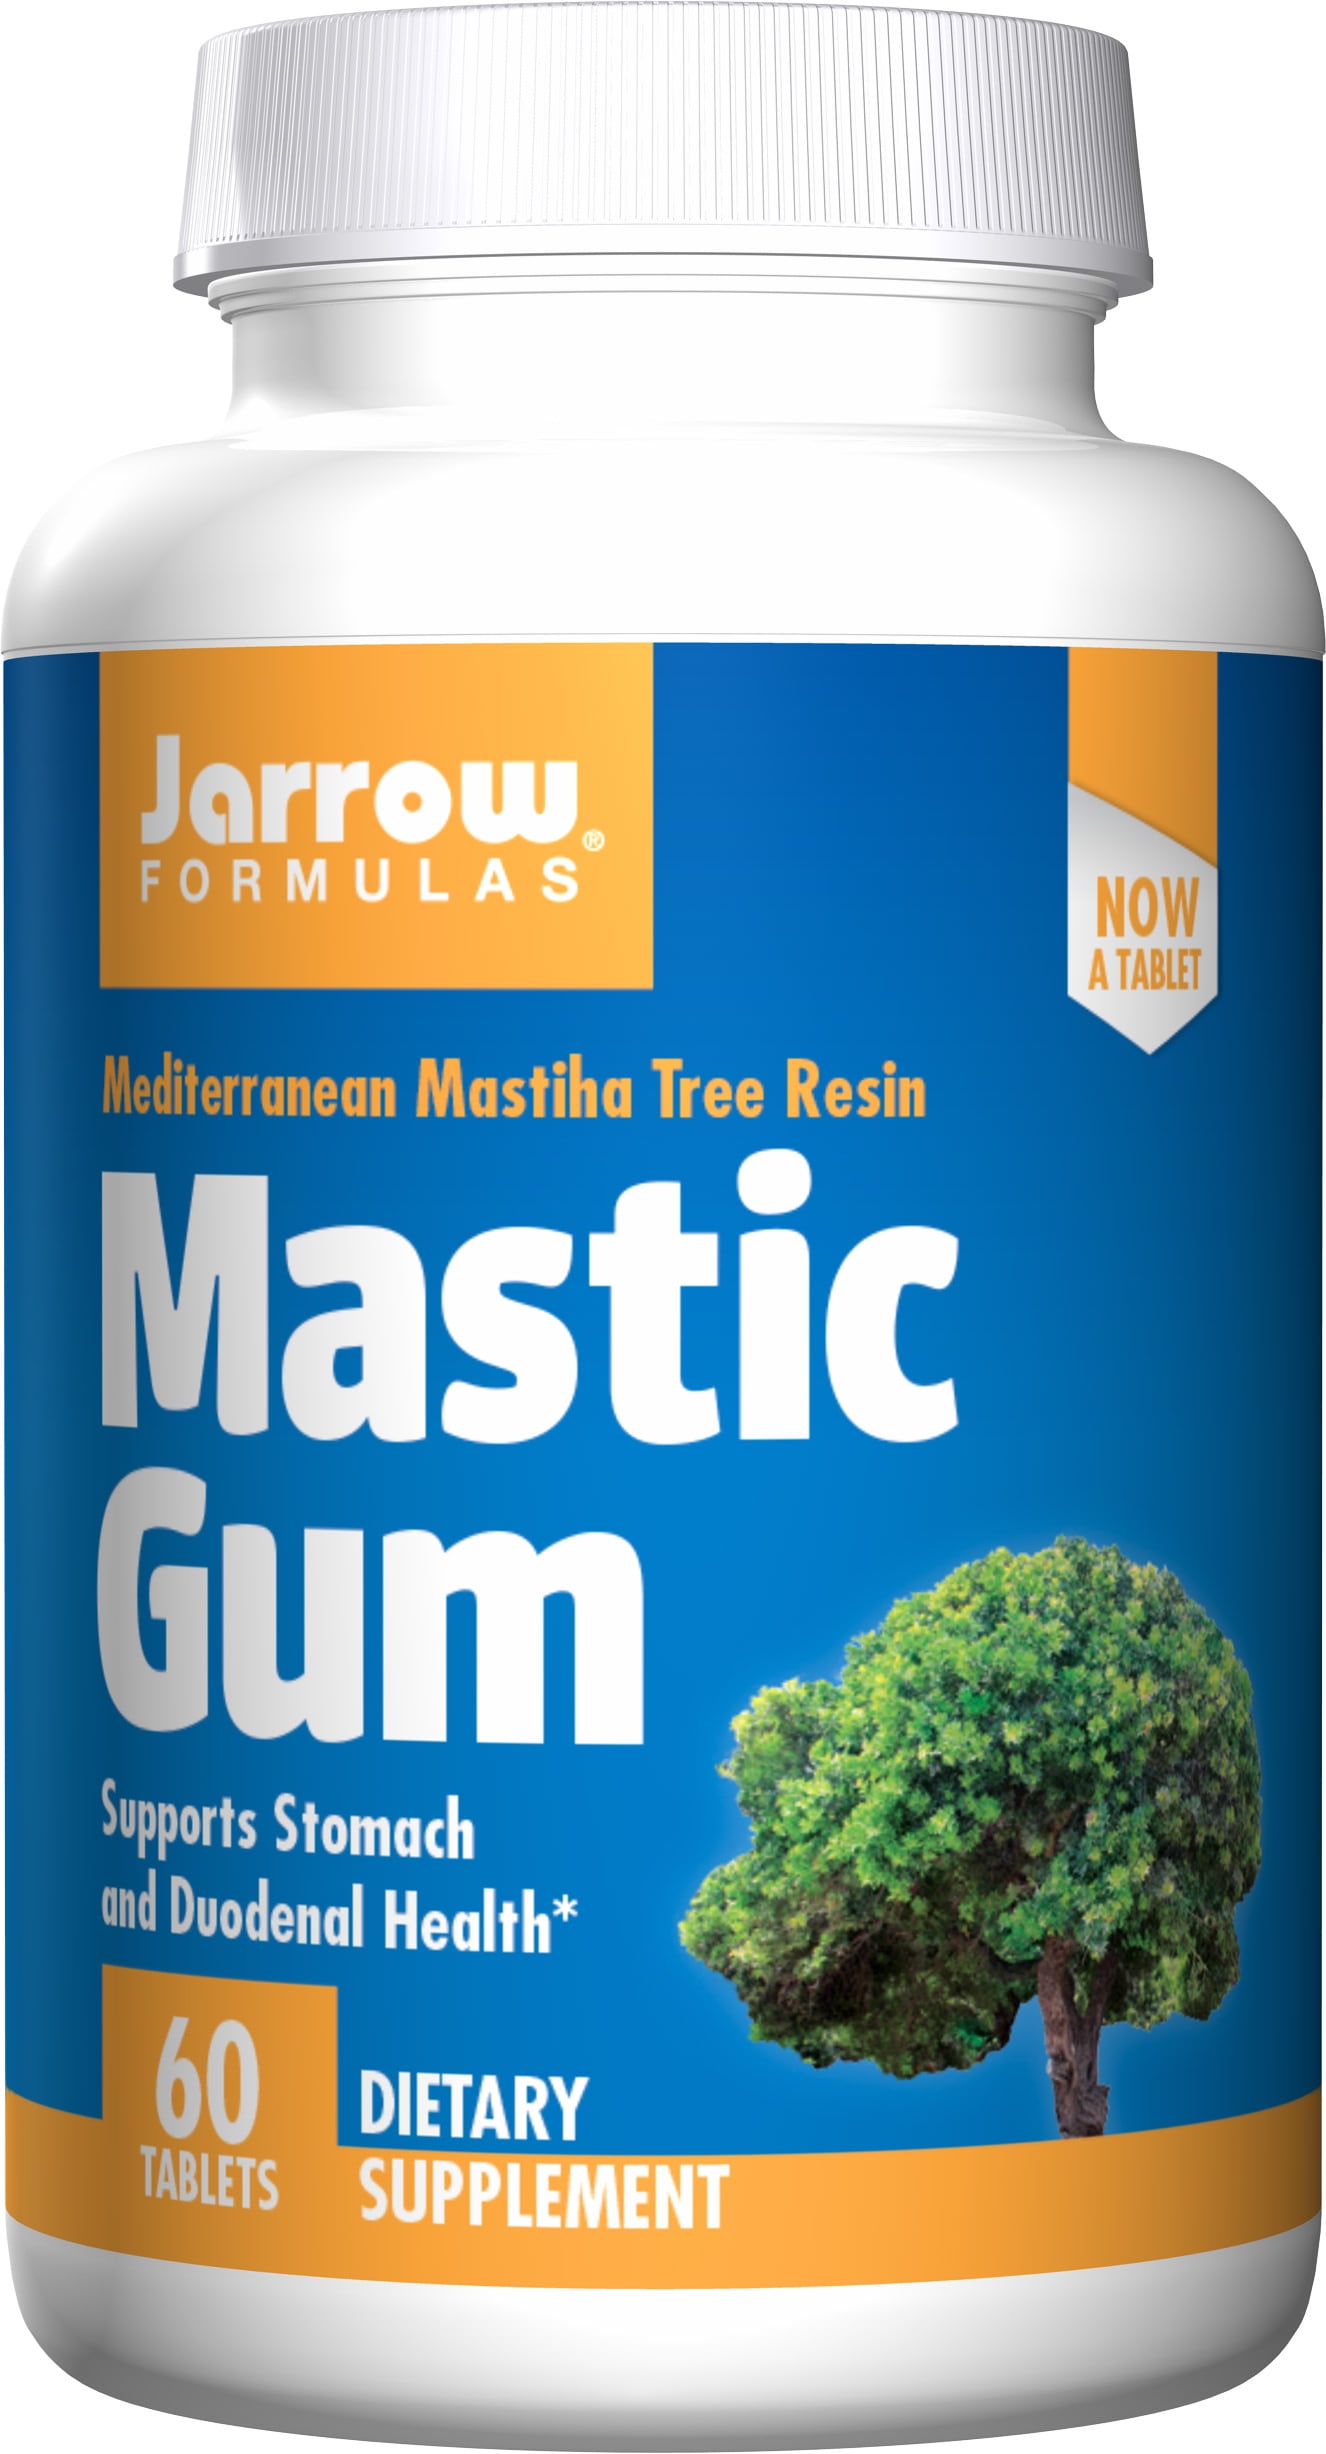 Mastic Gum, Jarrow Formulas